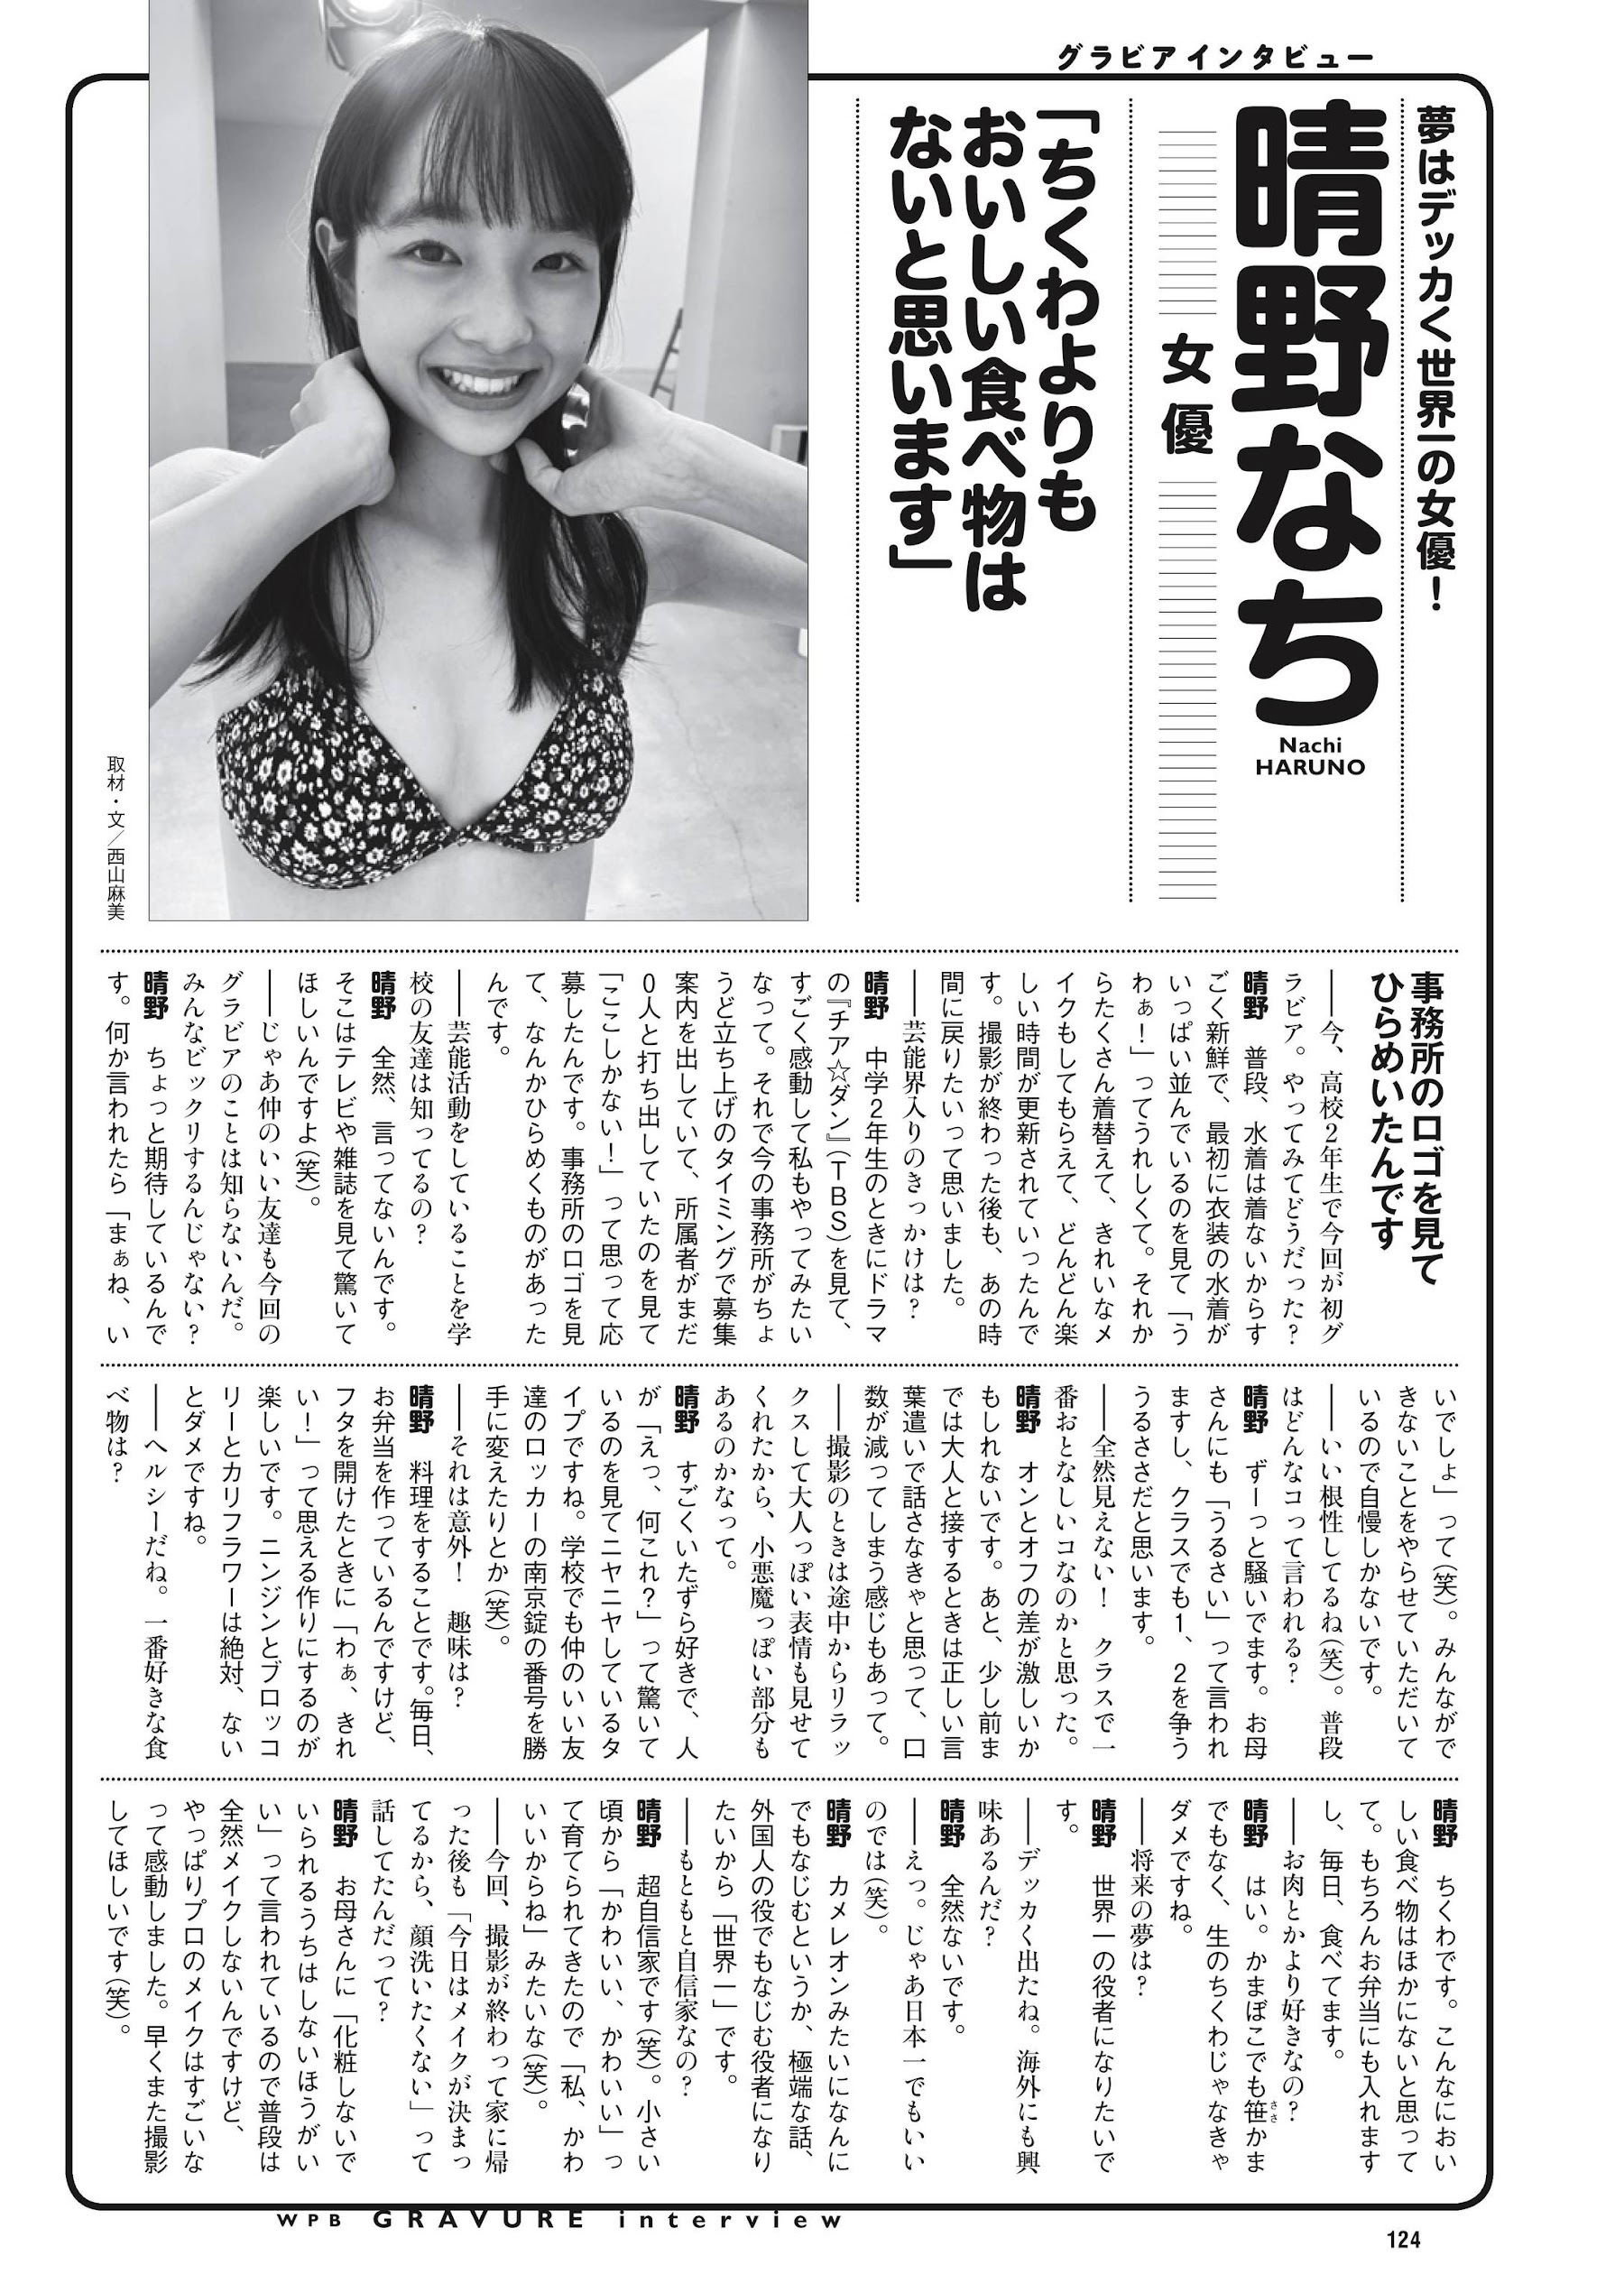 あかせあかり 大和田南那 Liyuu Weekly Playboy 2021.12.06 No.49 高清套图 第65张